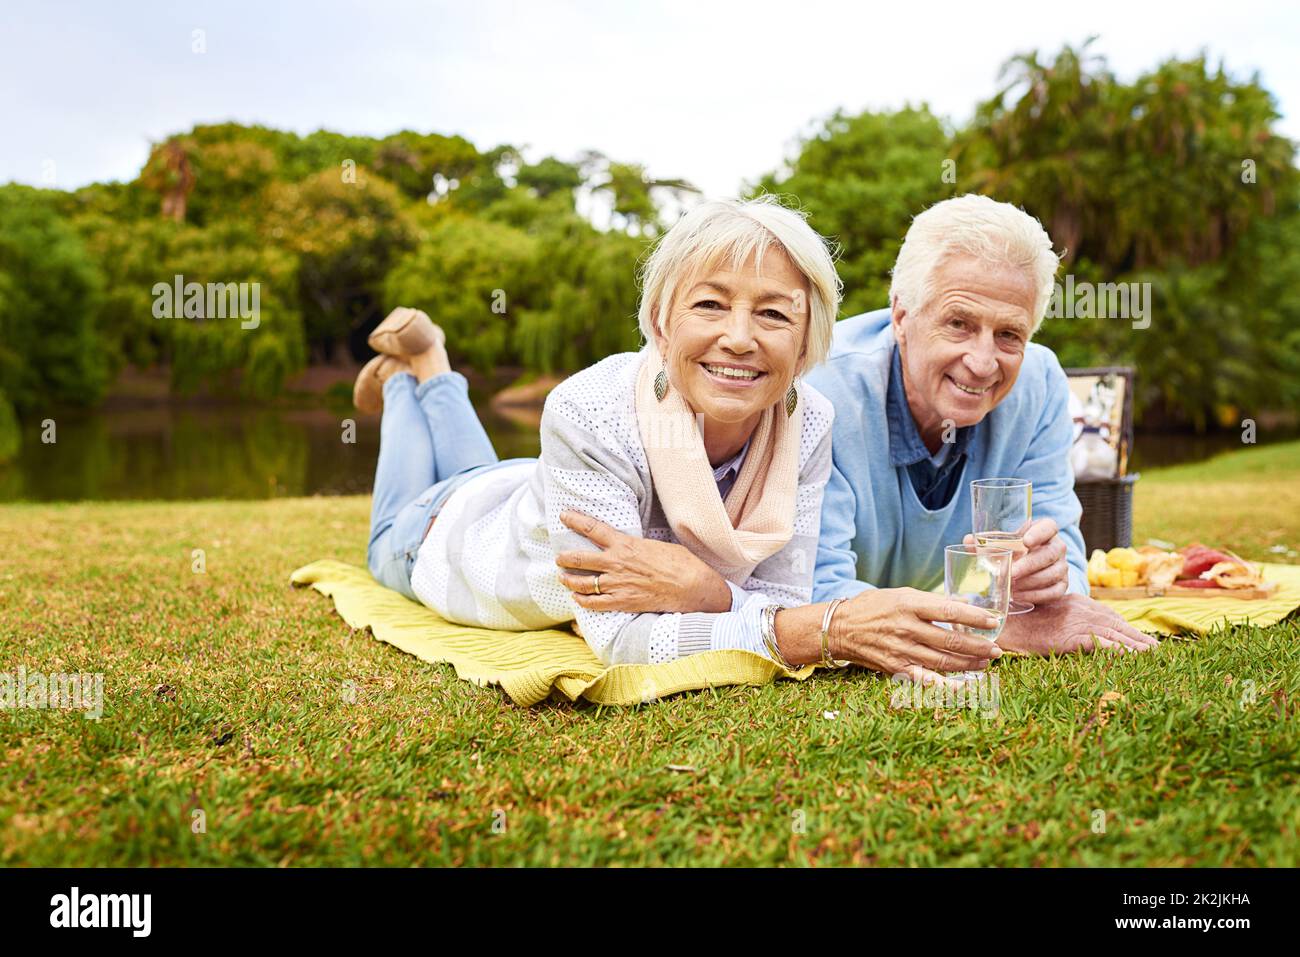 Eh bien, partagez toujours un zeste pour la vie. Portrait d'un couple senior en train de pique-niquer dans un parc. Banque D'Images